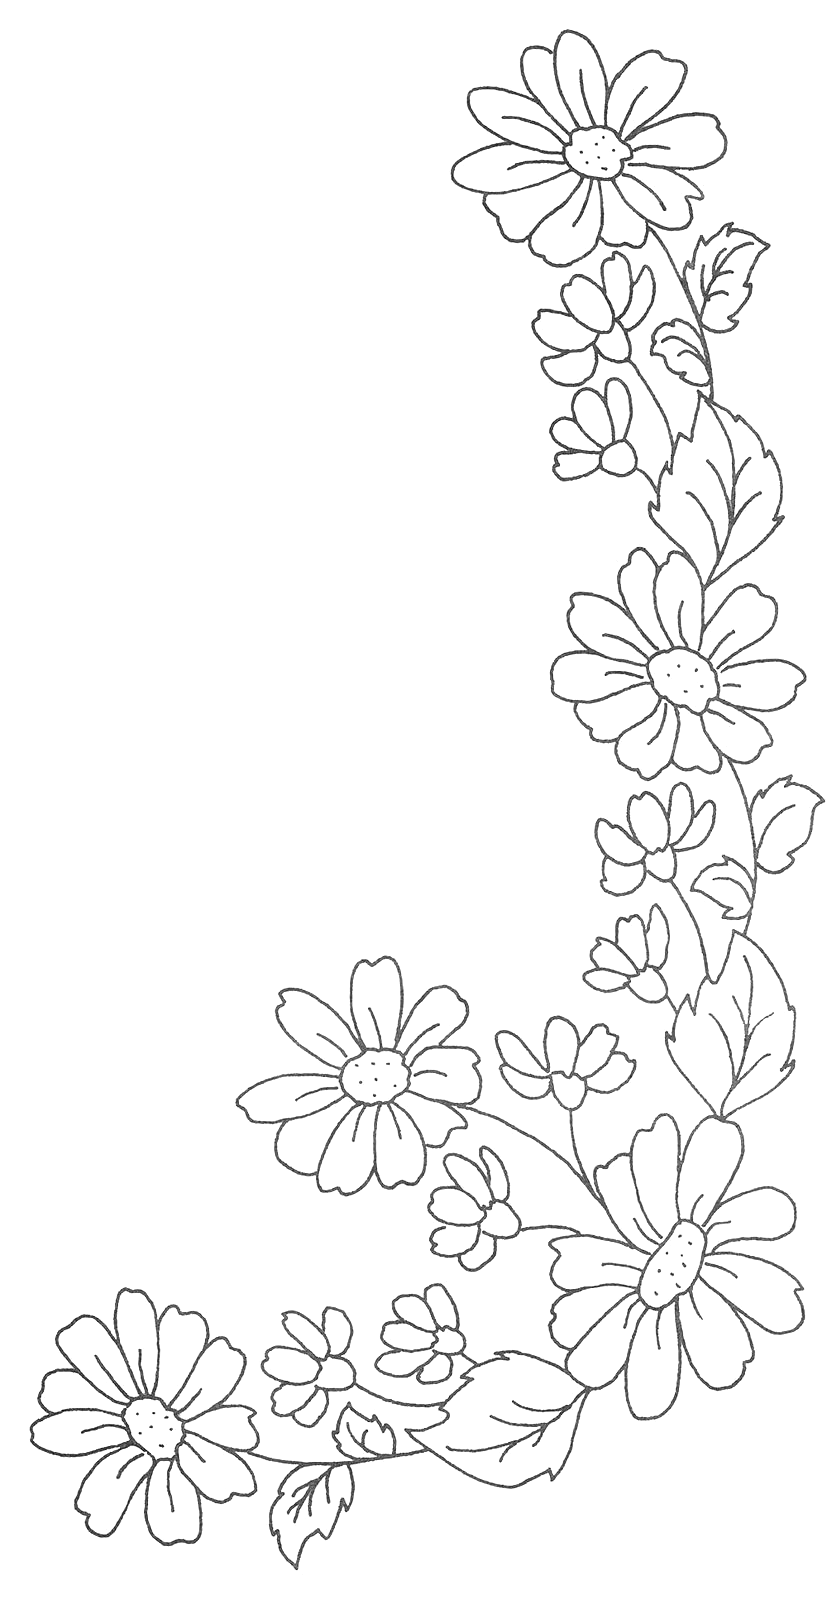 Daisy Chain Chain Daisy In 2020 Handstickerei Blumen Blumenzeichnung Blumen Zeichnung